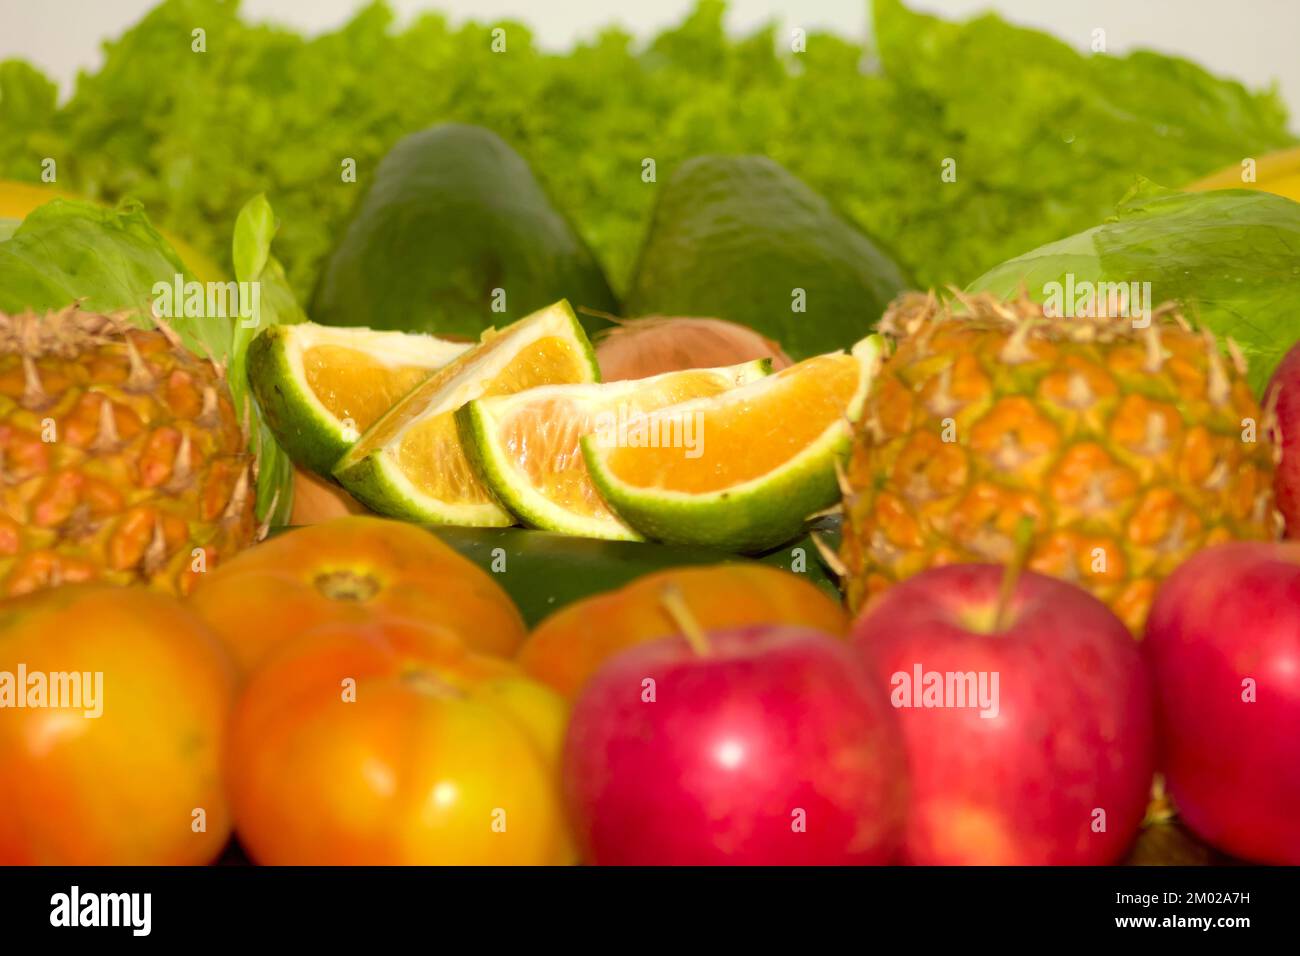 Variedad de frutas y verduras agrupadas como plátano, pepino, manzana, piña, lechuga, tomate, naranja y más Foto de stock